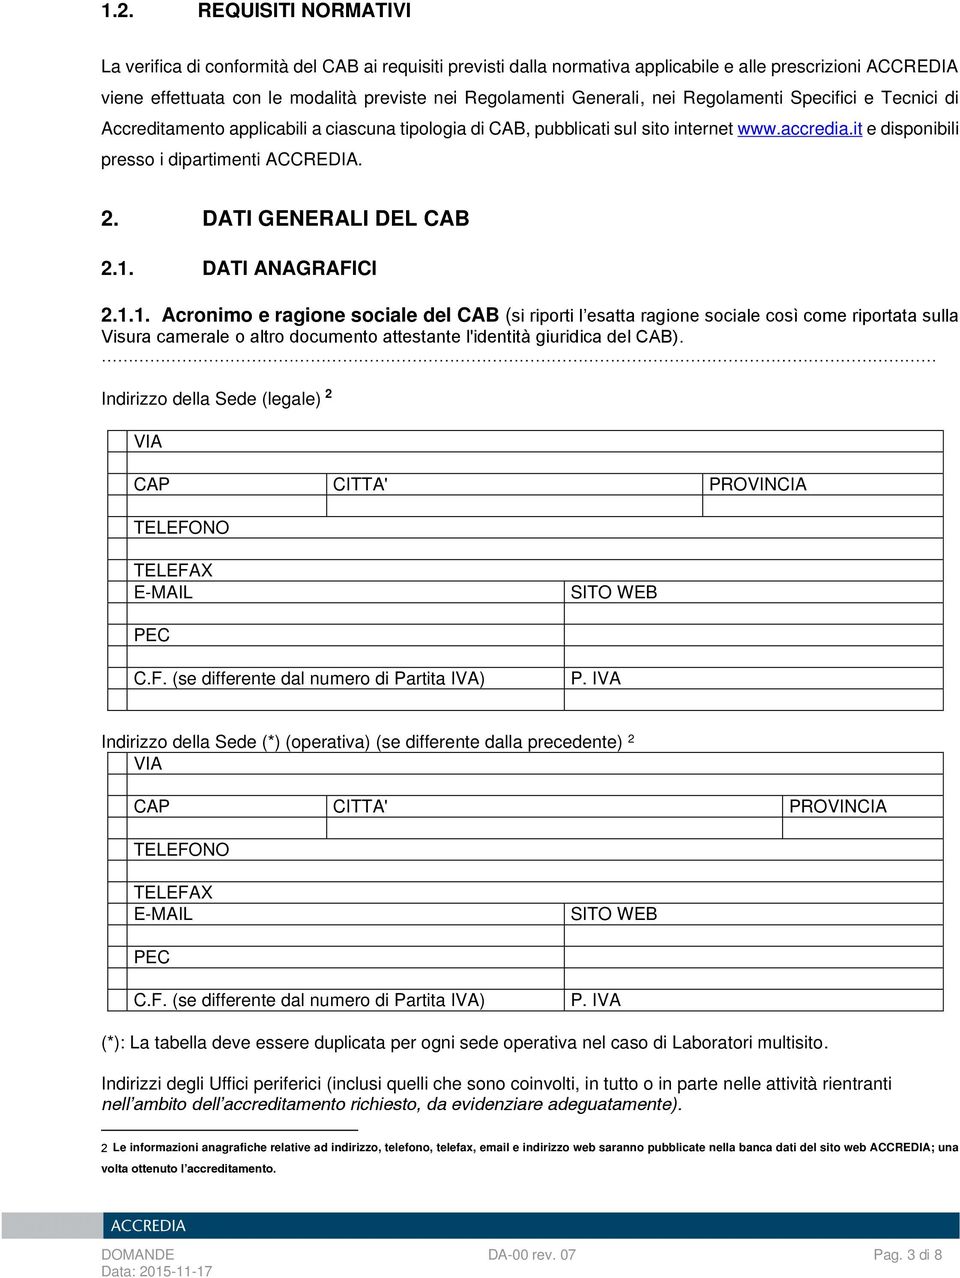 DATI GENERALI DEL CAB 2.1. DATI ANAGRAFICI 2.1.1. Acronimo e ragione sociale del CAB (si riporti l esatta ragione sociale così come riportata sulla Visura camerale o altro documento attestante l'identità giuridica del CAB).